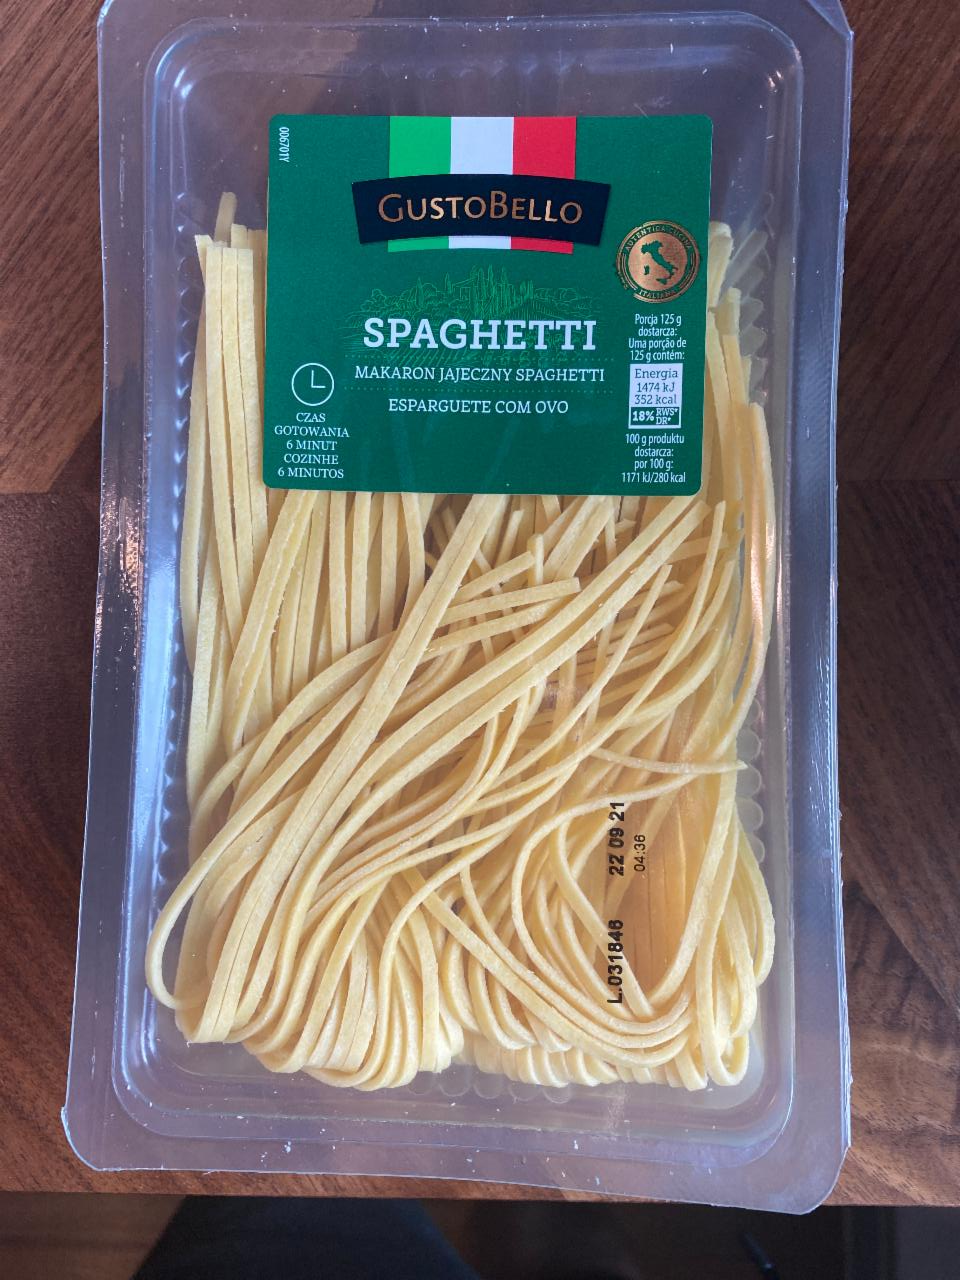 Zdjęcia - Spaghetti gusto bello